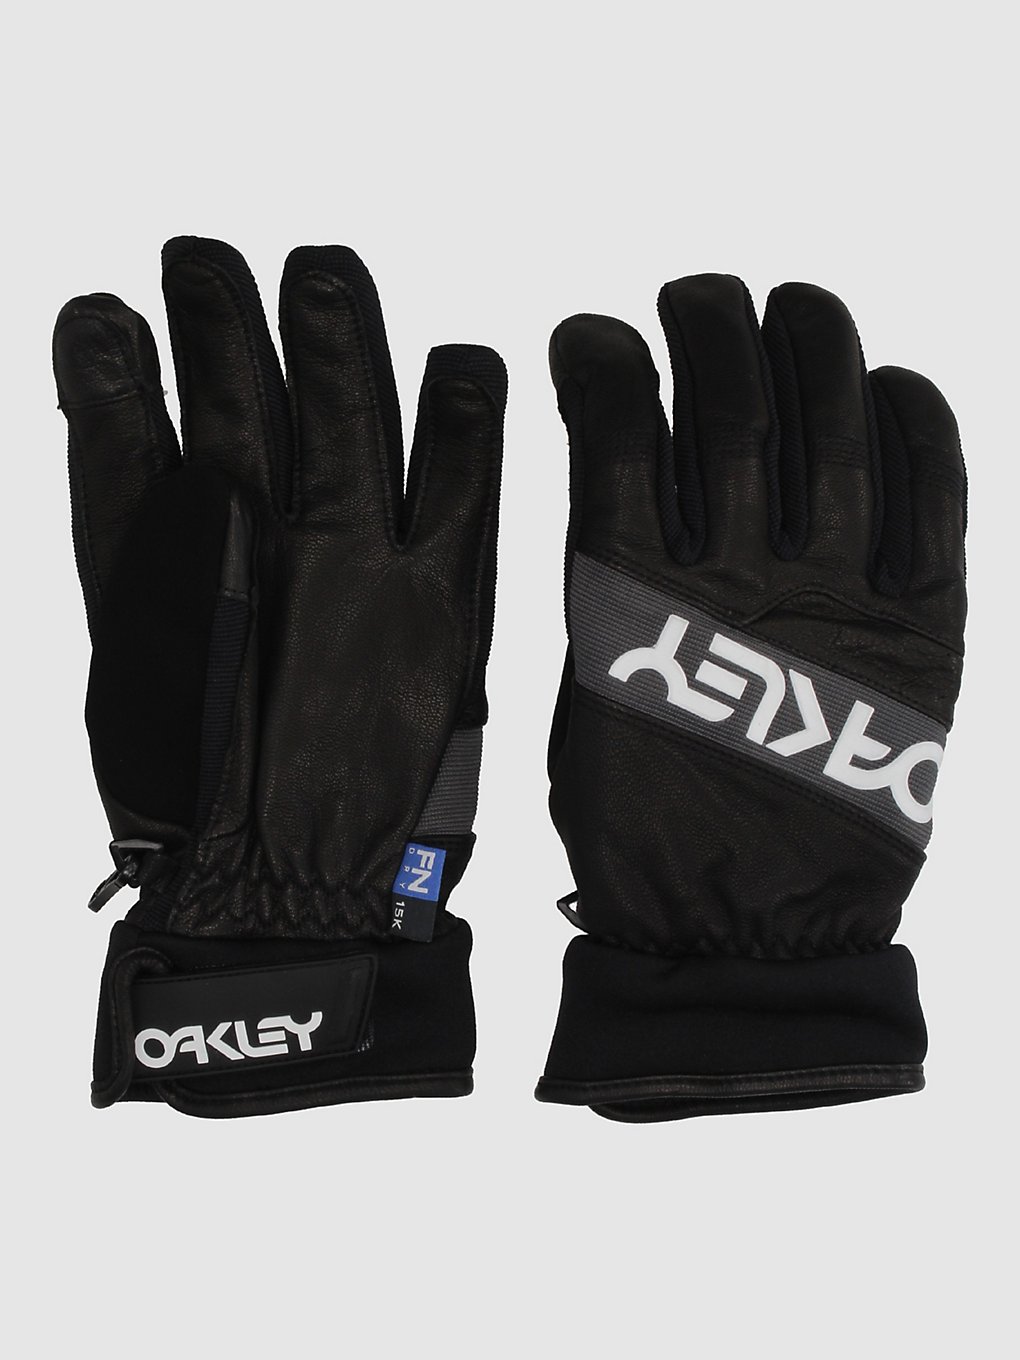 Oakley Factory Winter 2.0 Handschuhe blackout kaufen